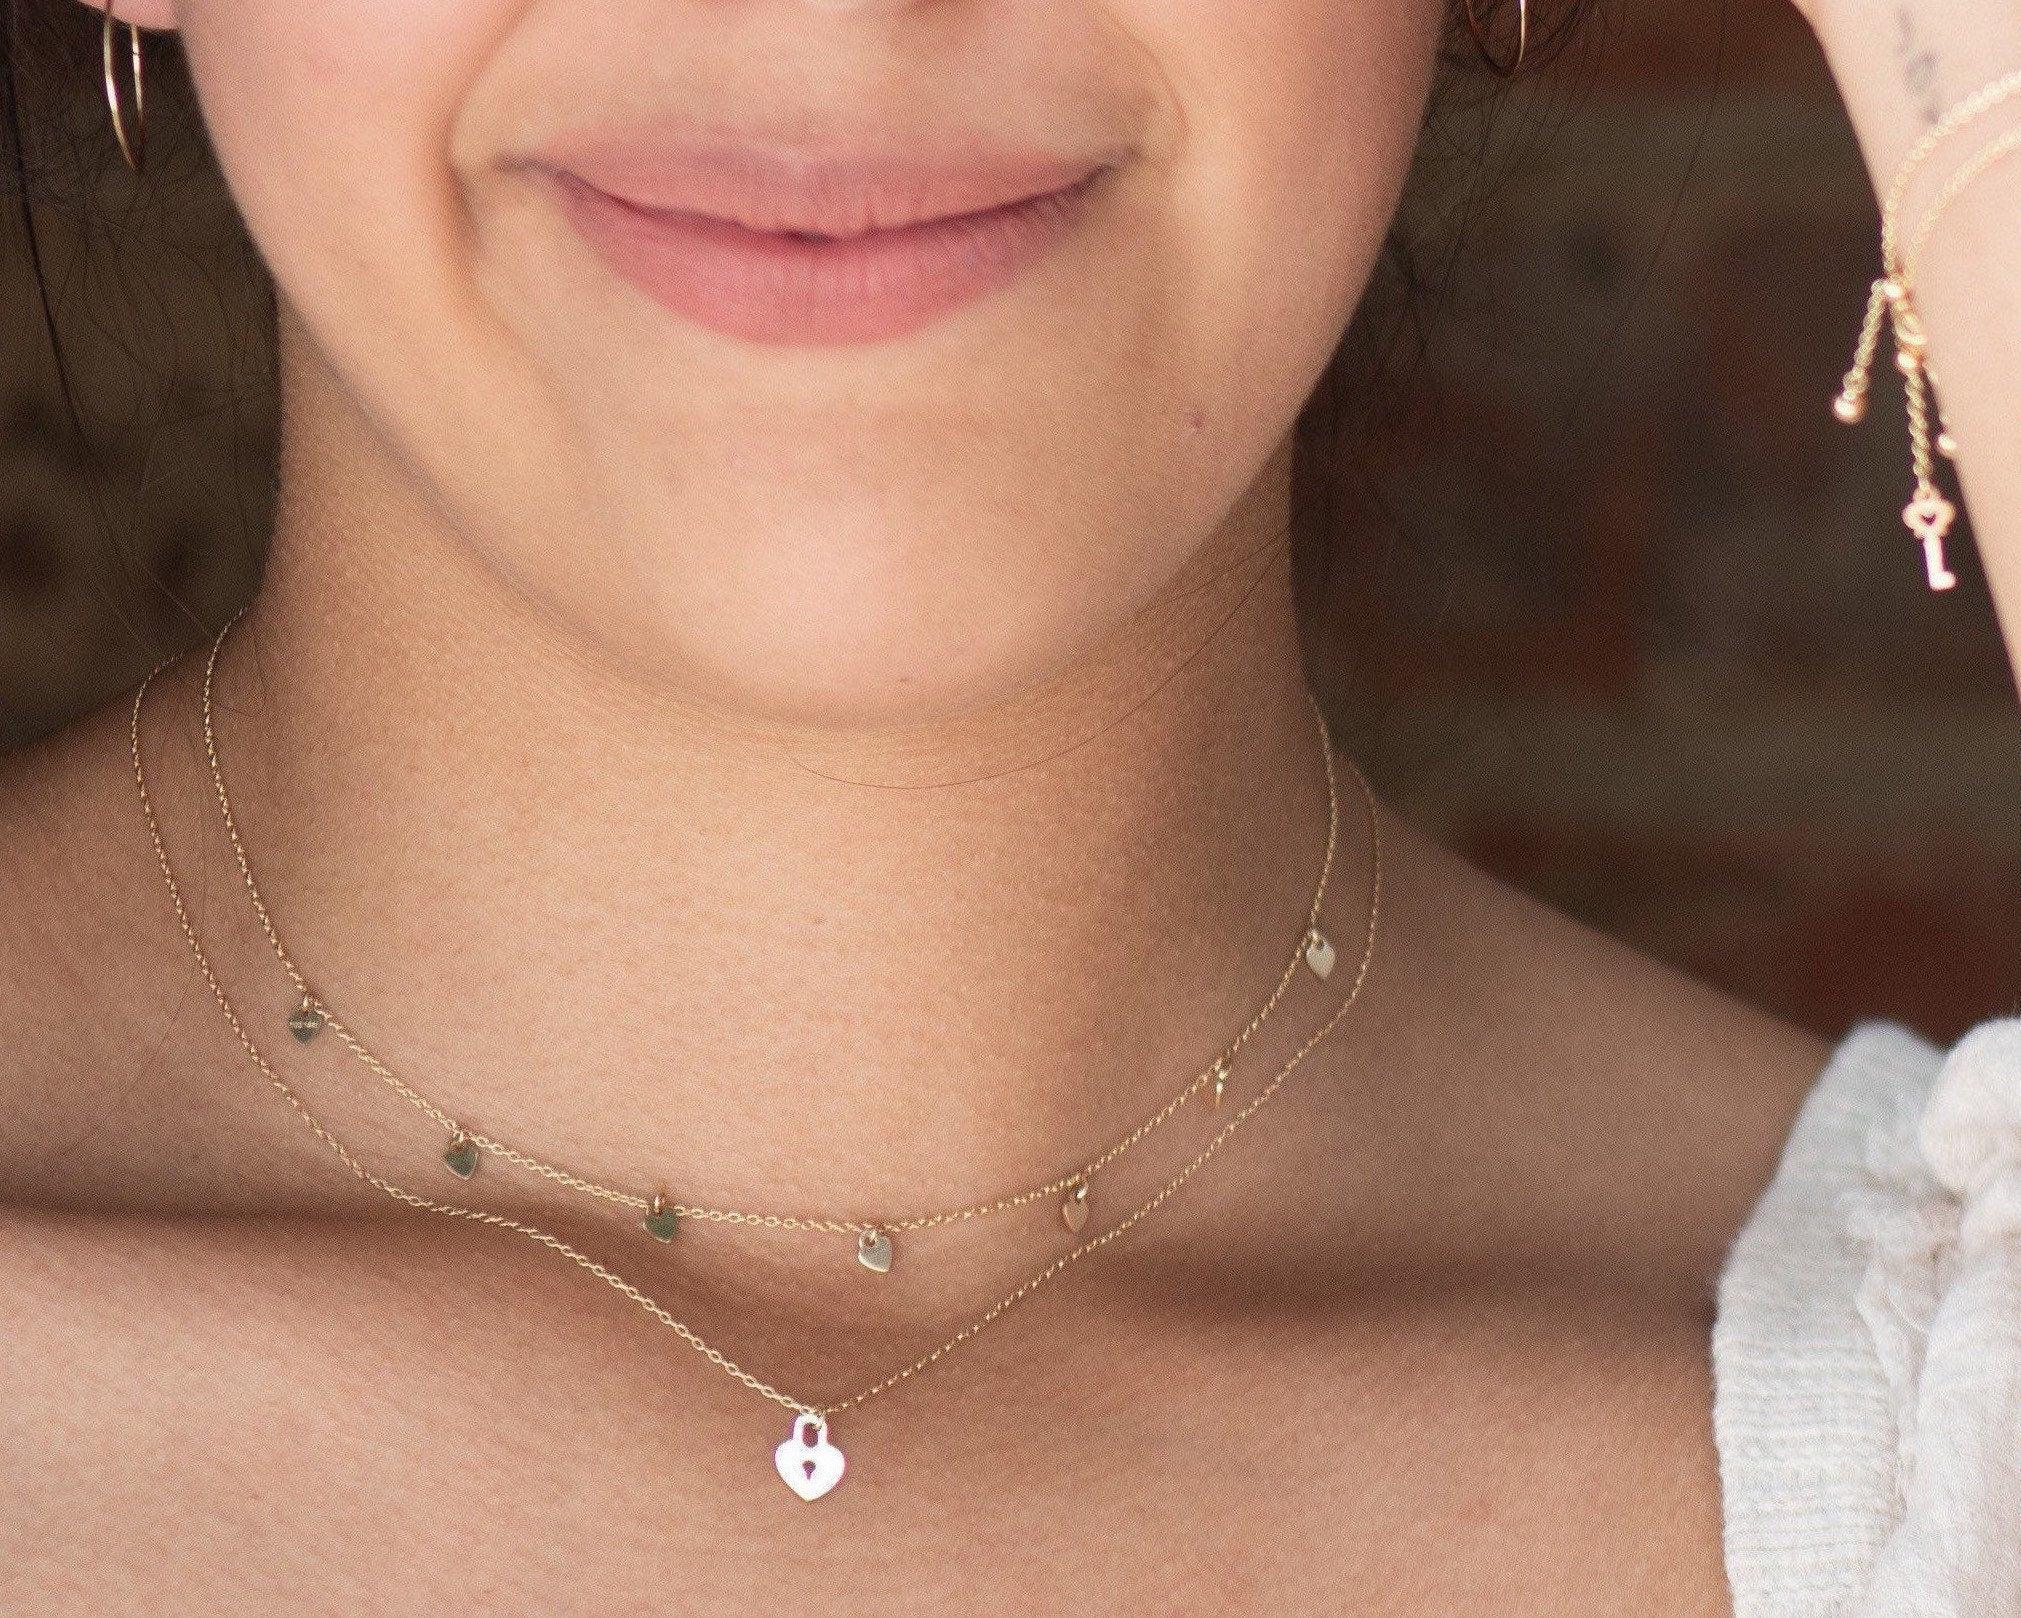 Buy Lock of Heart Pendant Necklace Online in India | Zariin